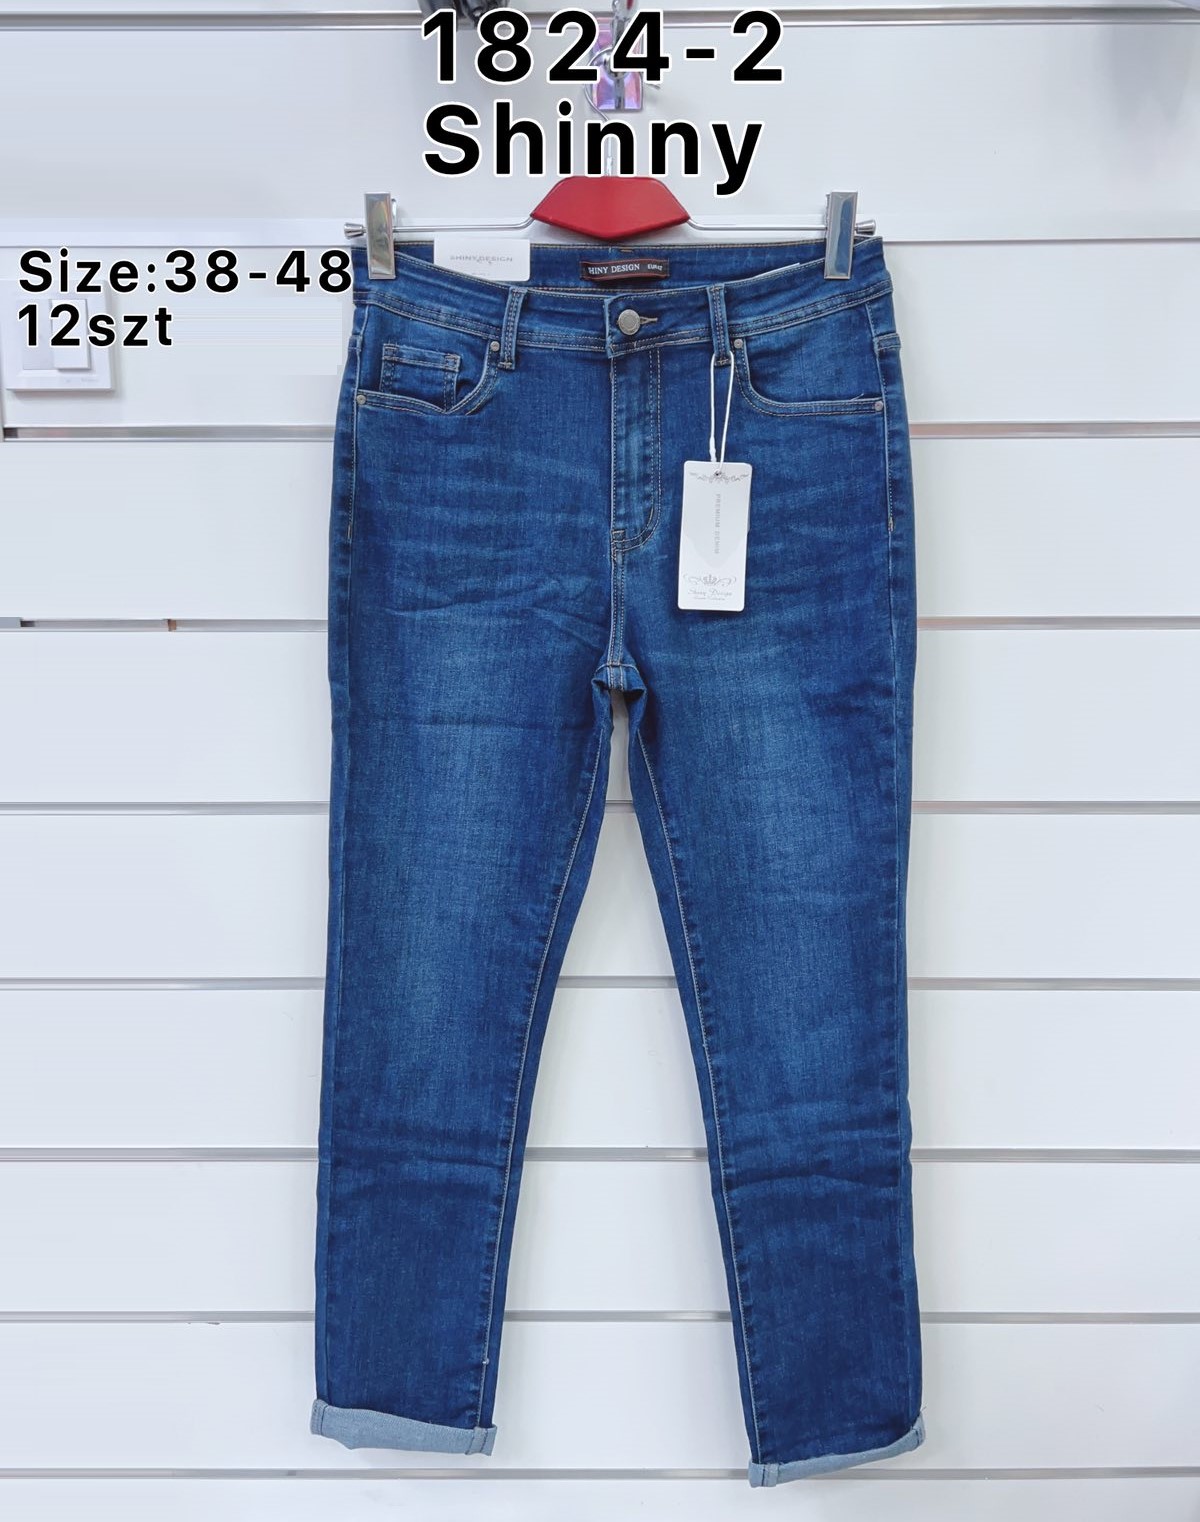 Spodnie  damskie jeans Roz  38-48.  1 kolor . Paczka 10szt